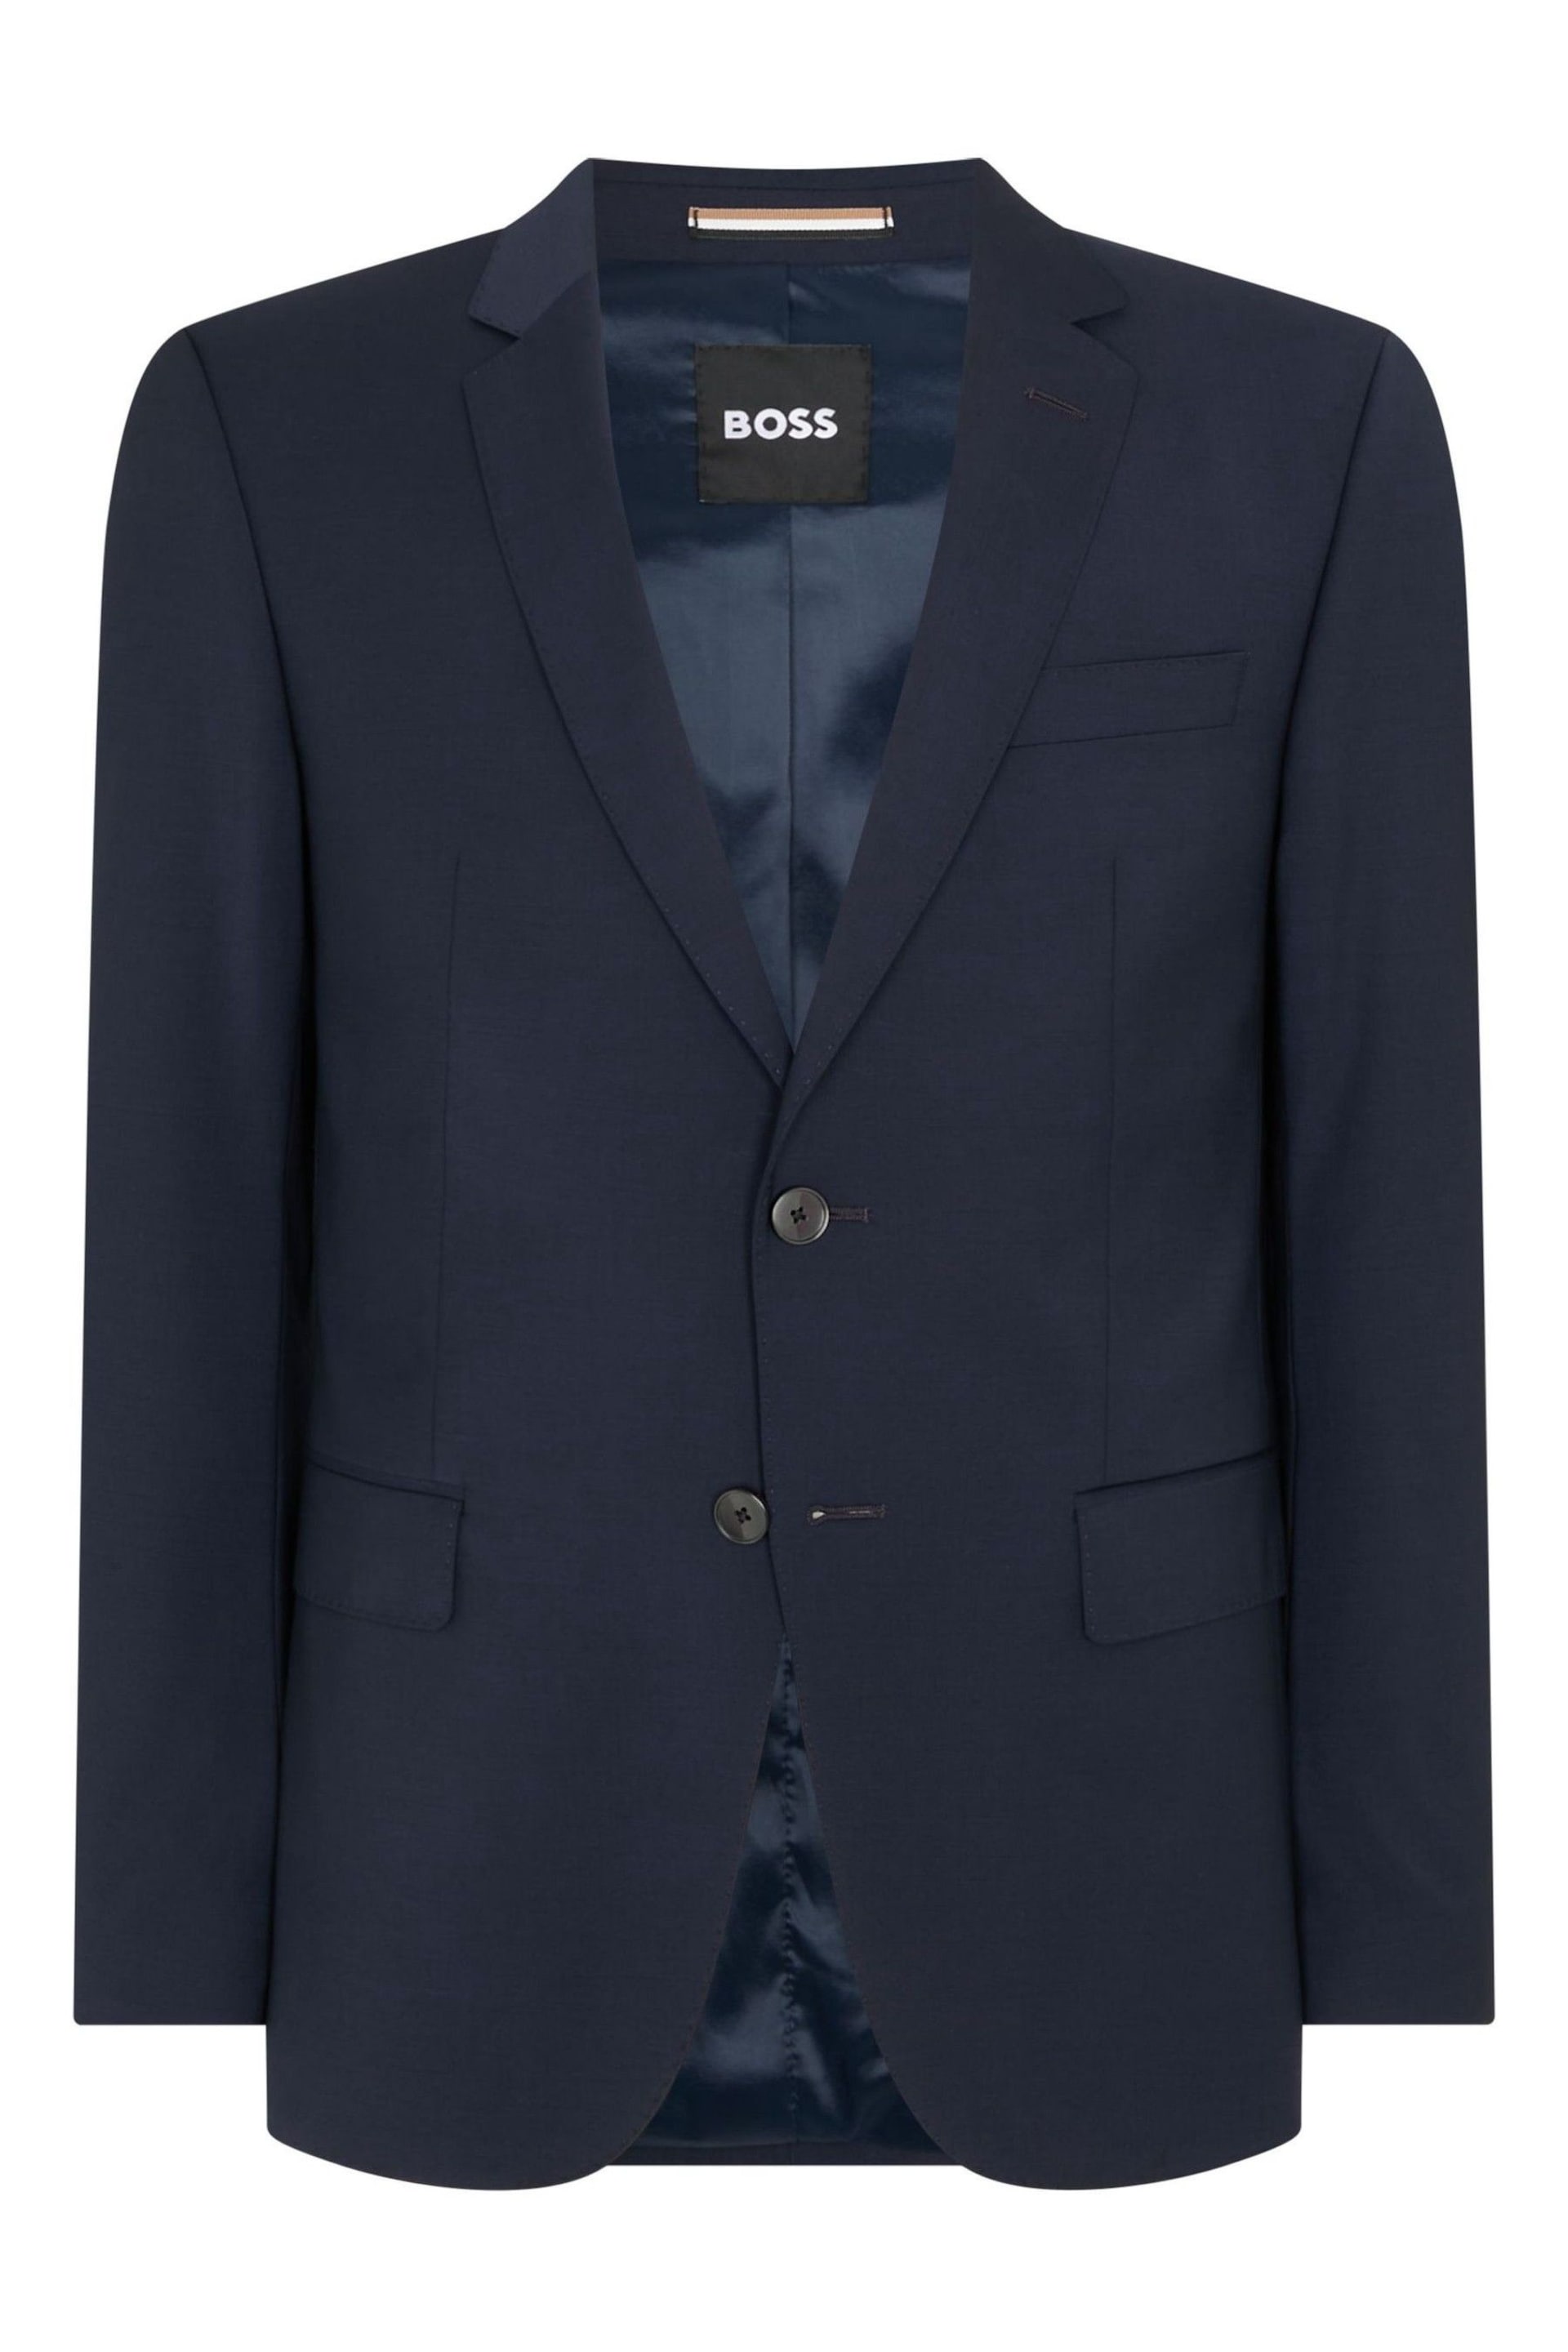 BOSS Blue Slim Fit Suit: Jacket - Image 6 of 7